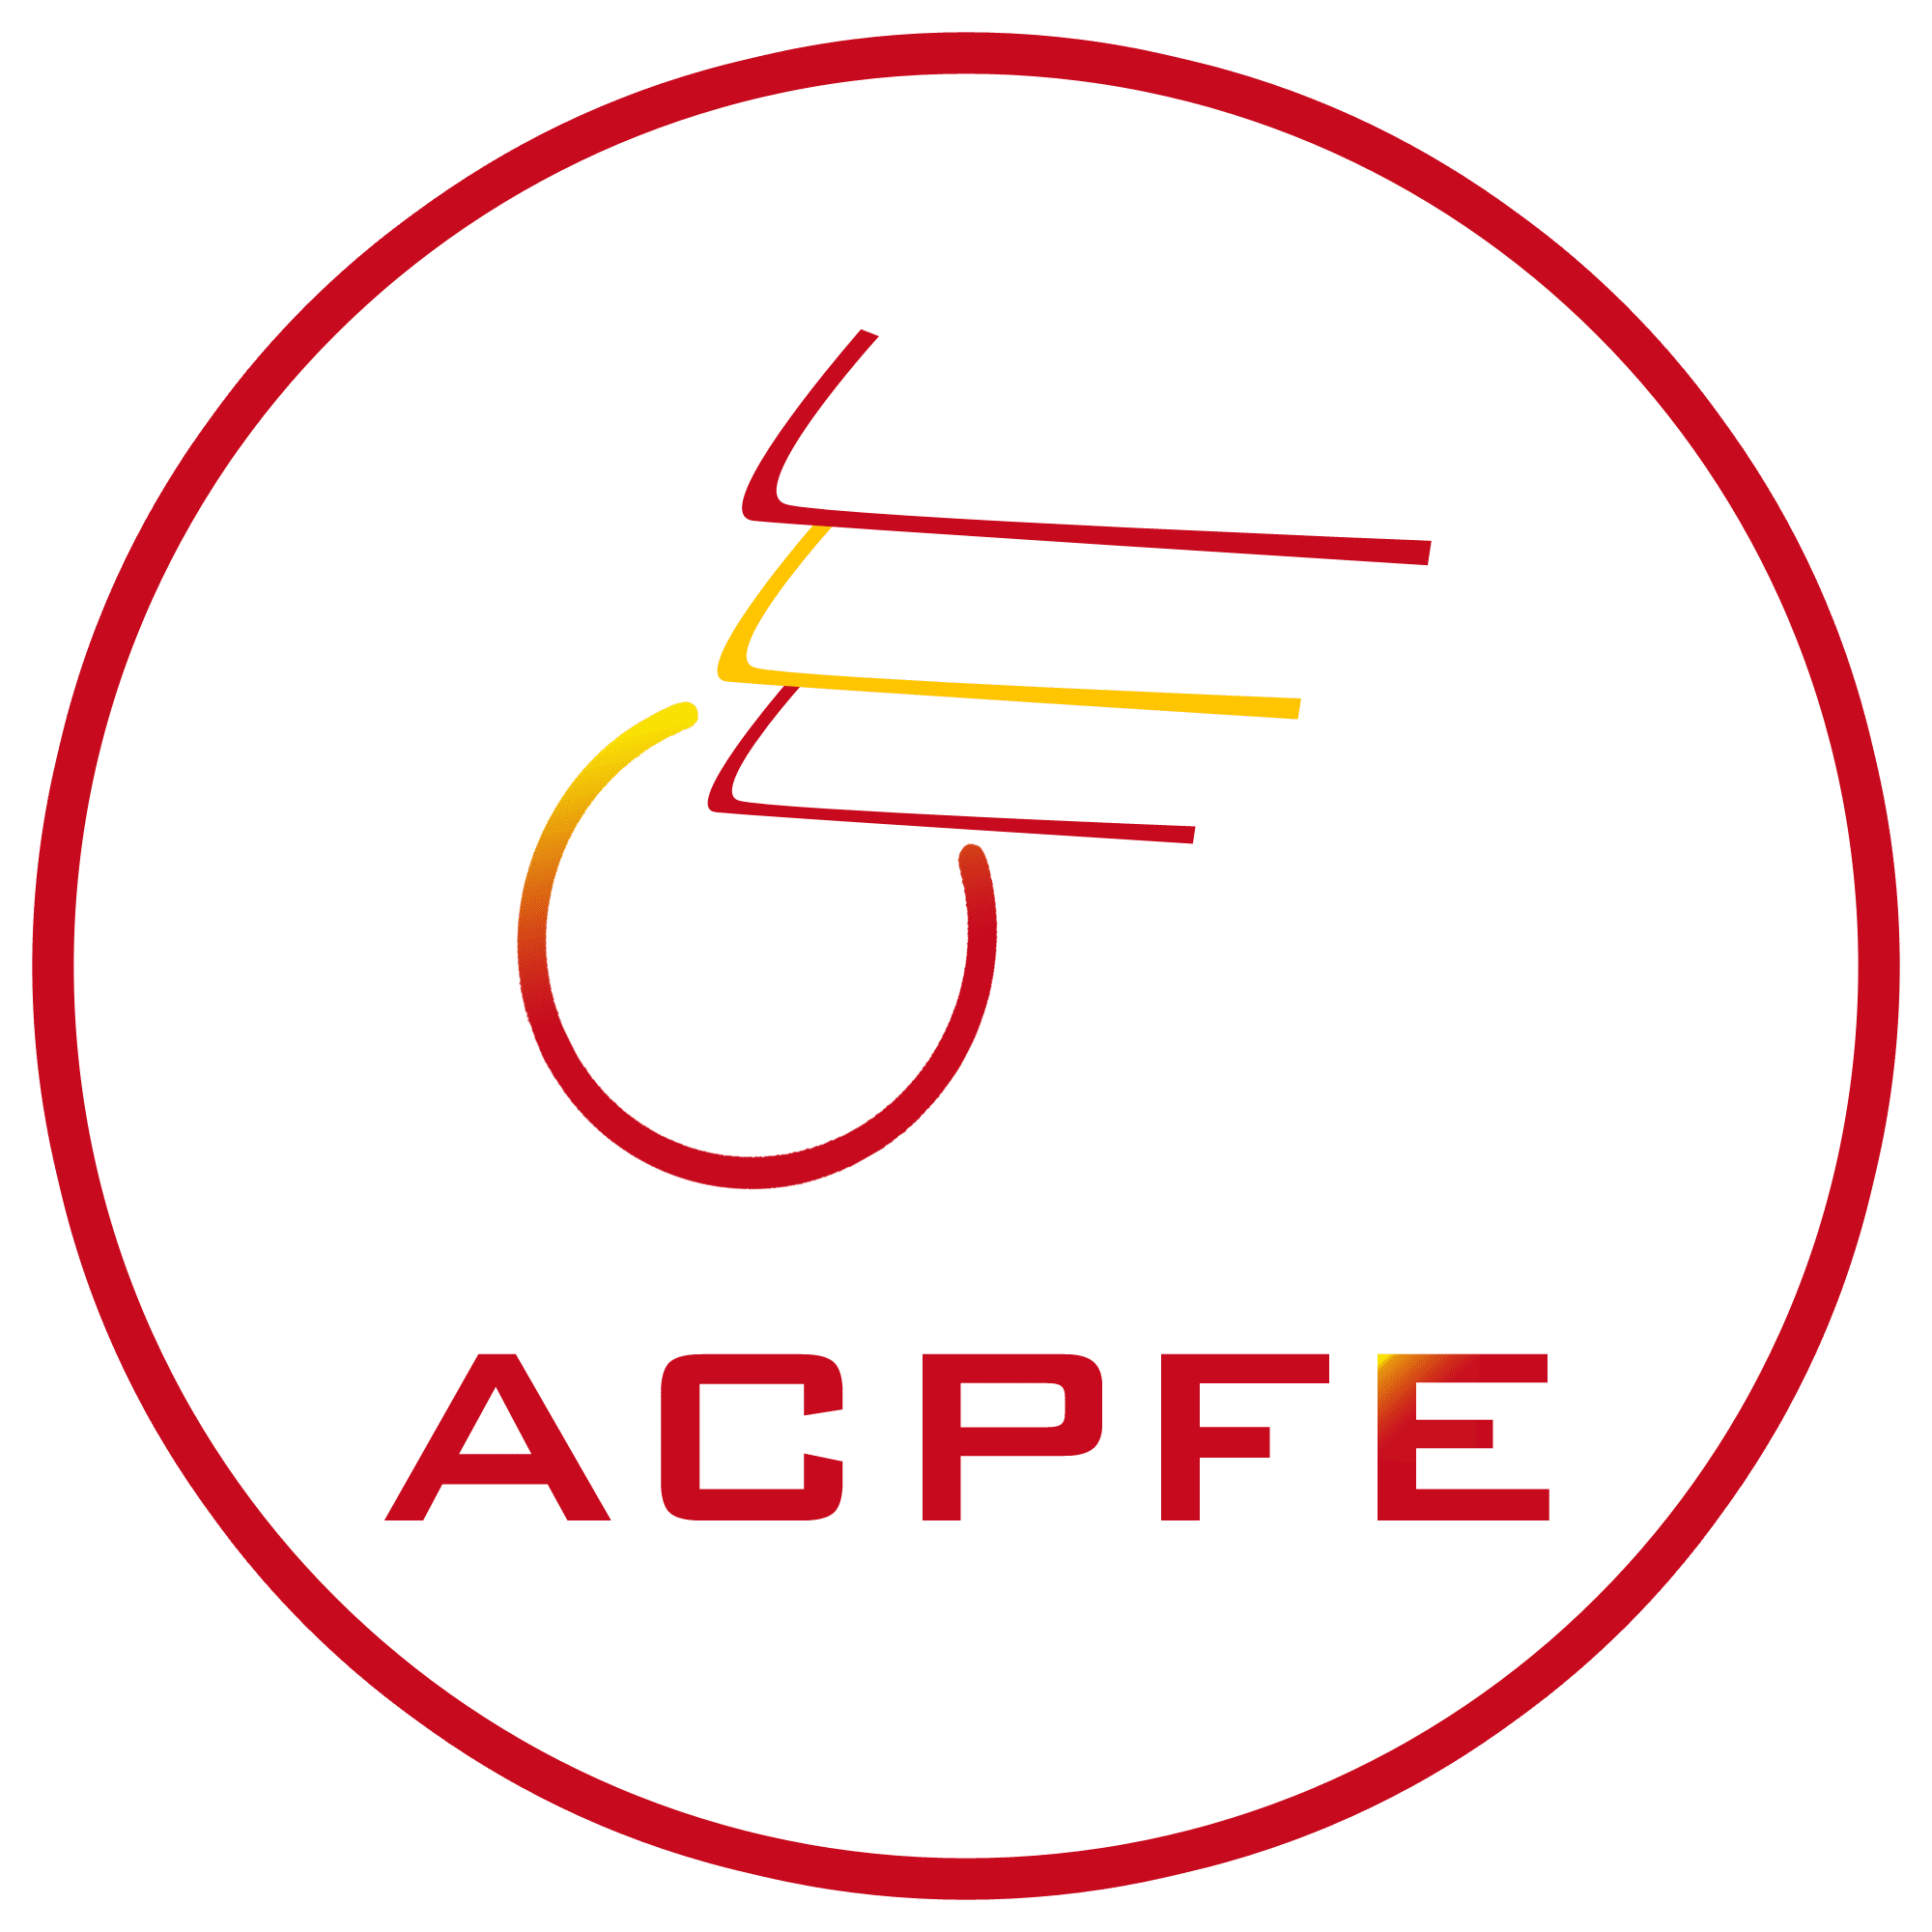 ACPFE